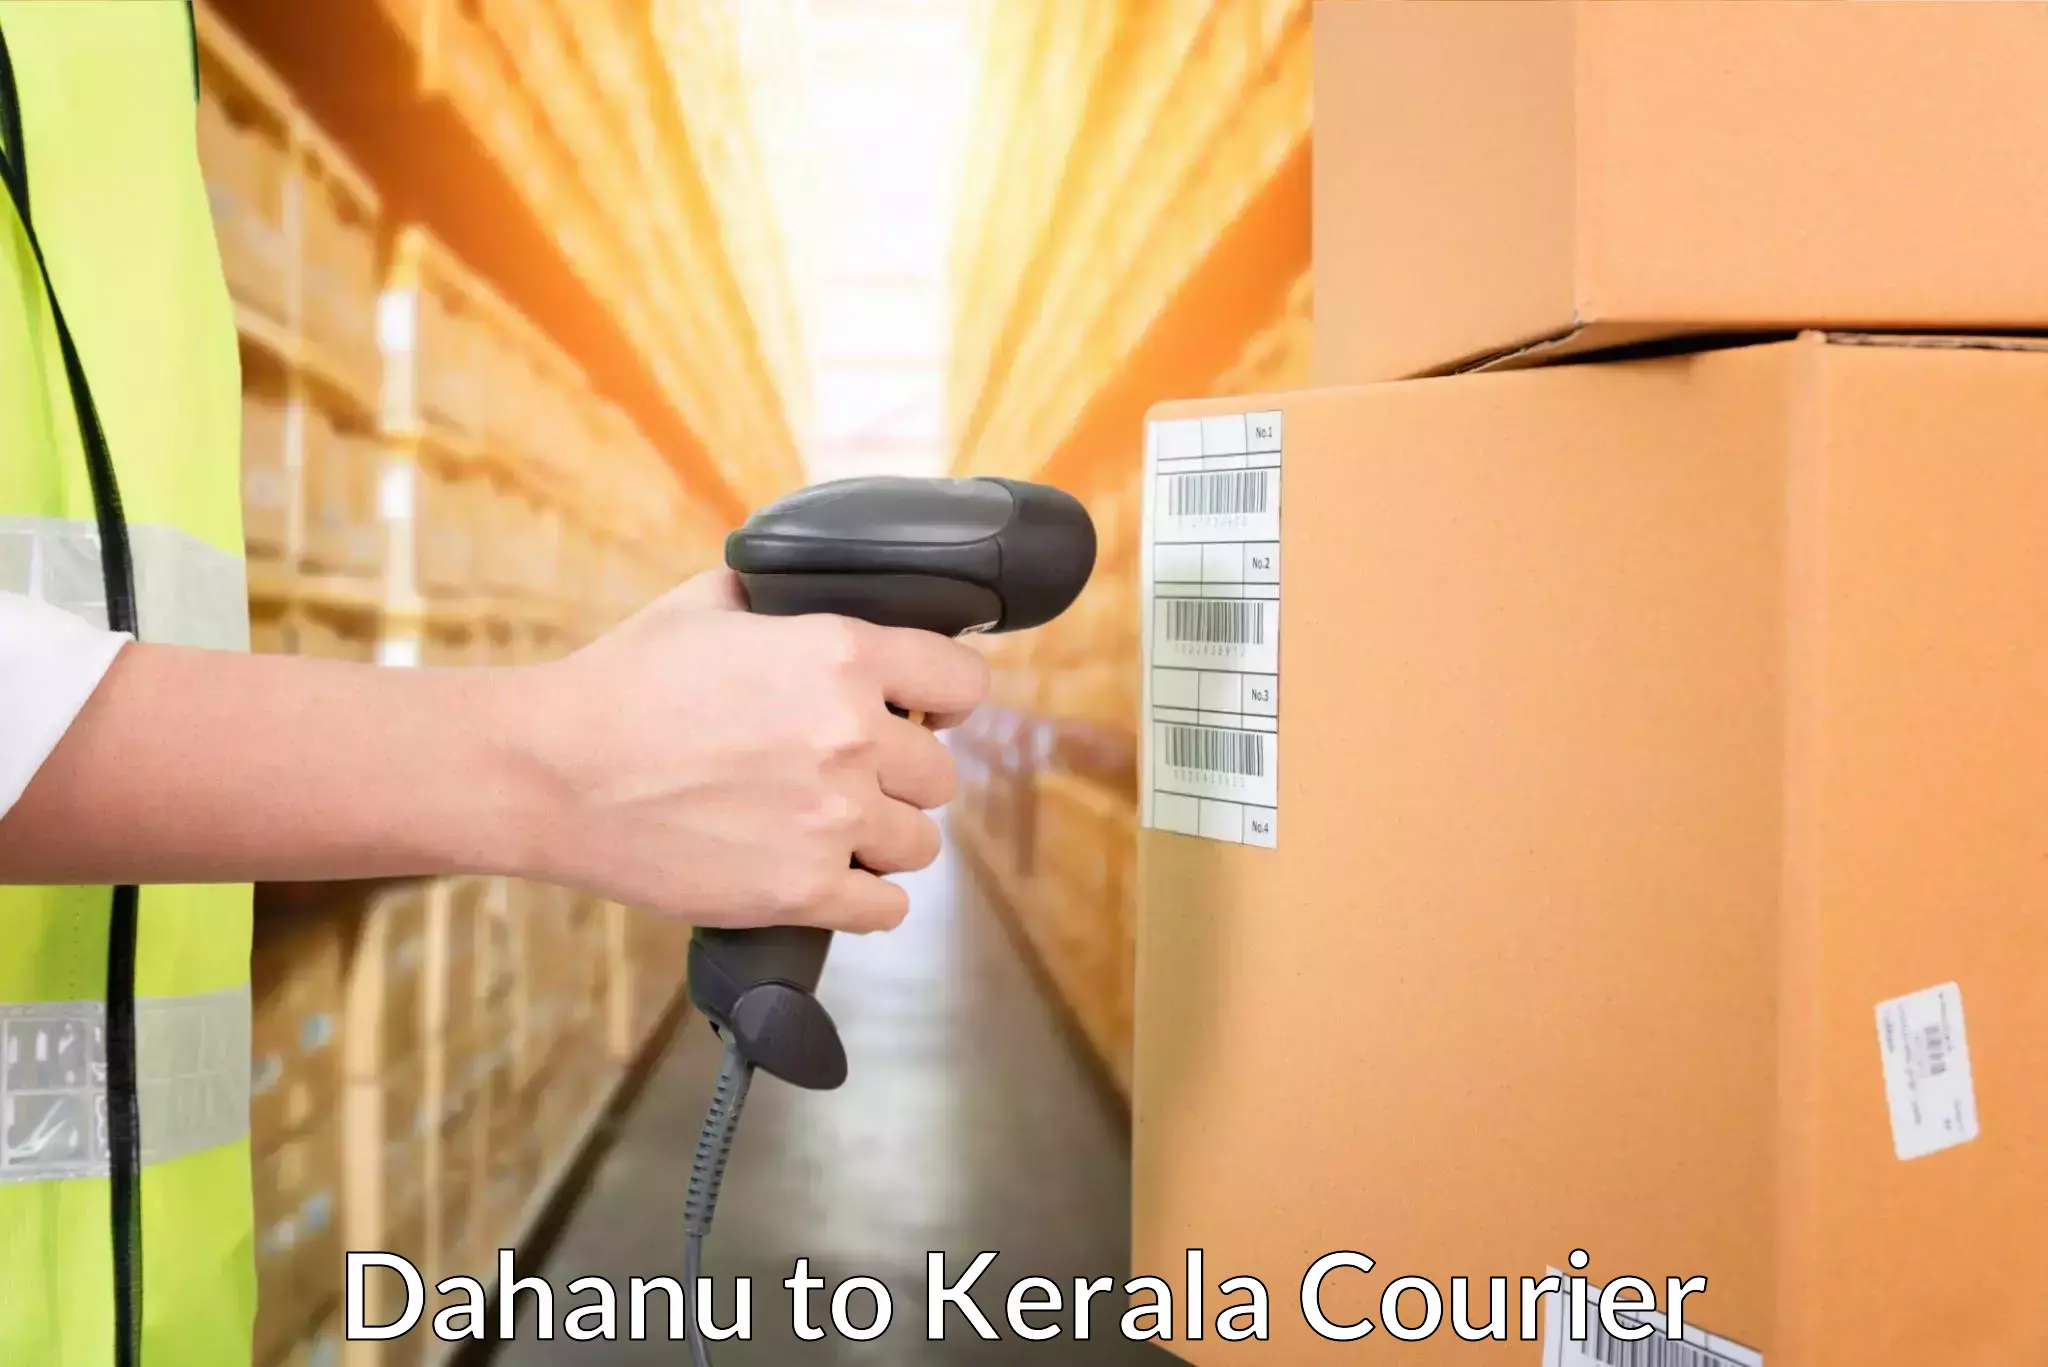 24-hour courier services Dahanu to Neyyattinkara